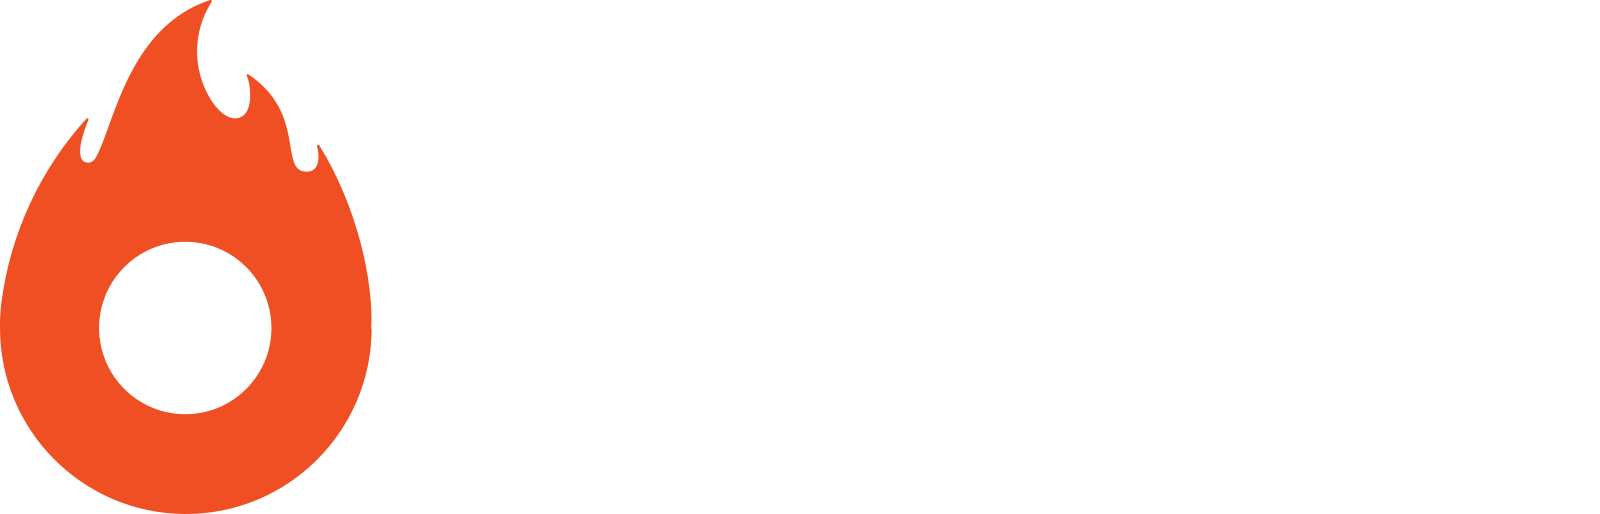 Hotmart Logo - PNG e Vetor - Download de Logo